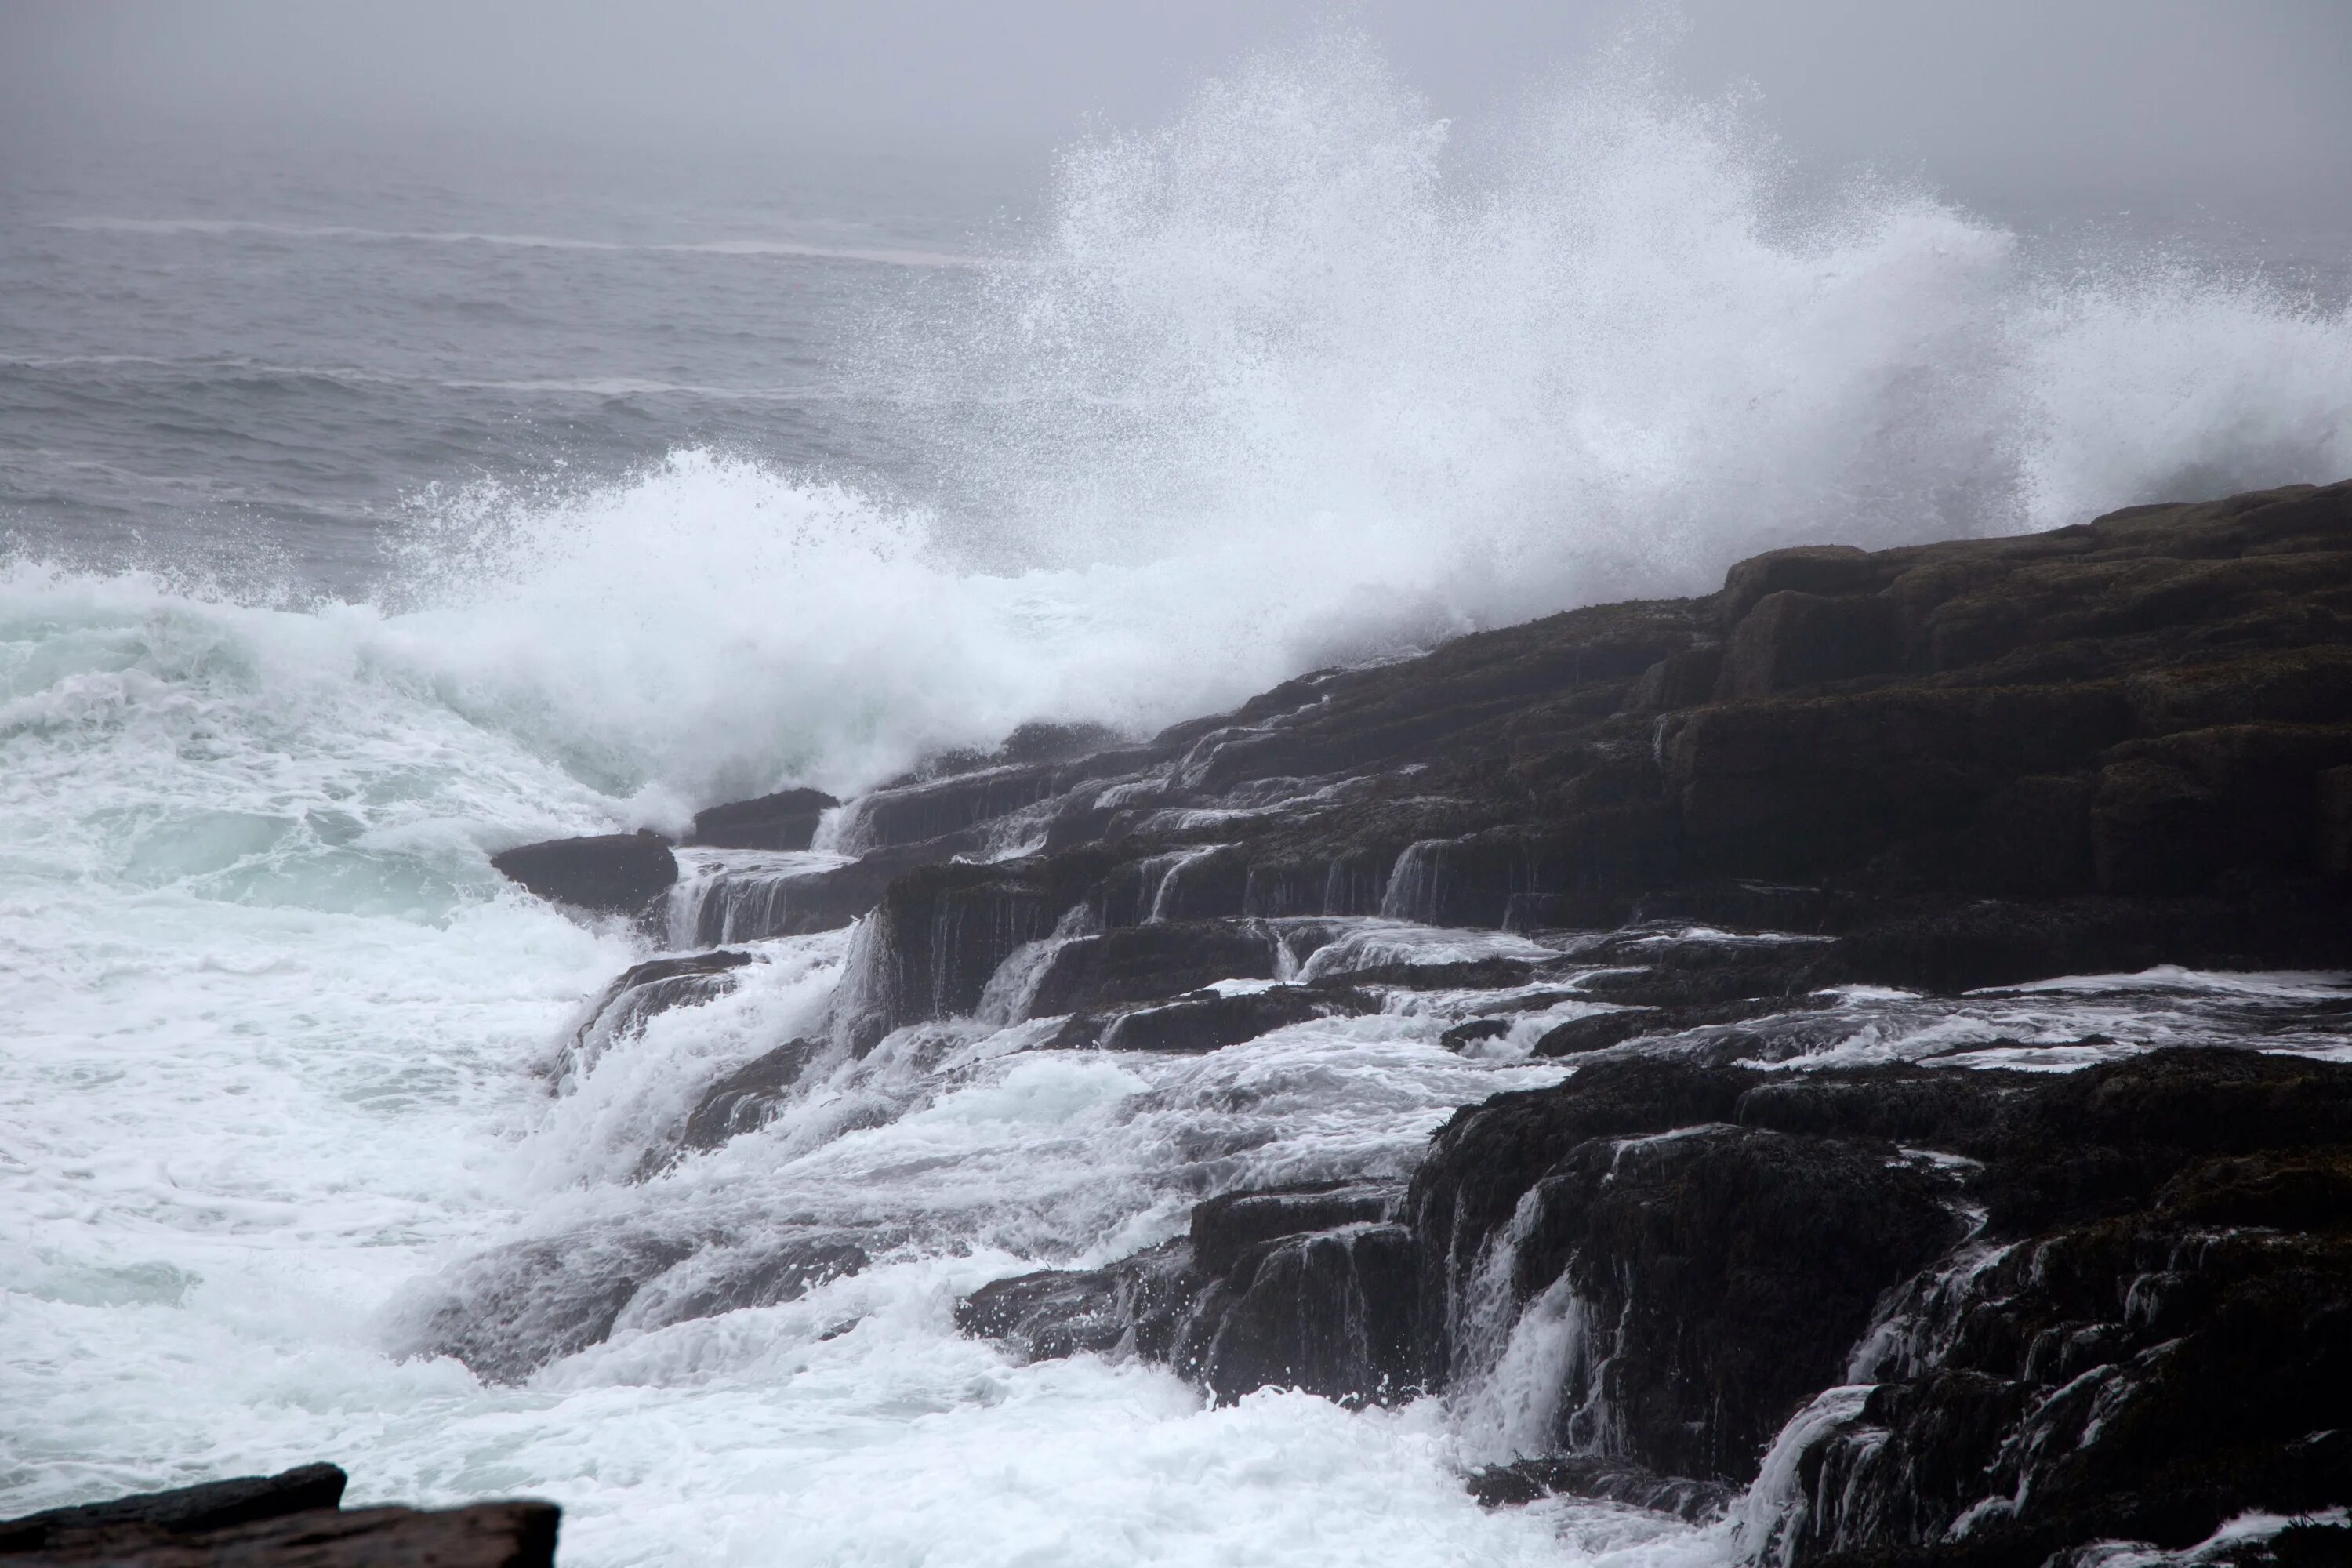 Море Утес шторм. Португалия-скалы шторм. Море скалы шторм Крым. Чёрное море шторм волны скалы.